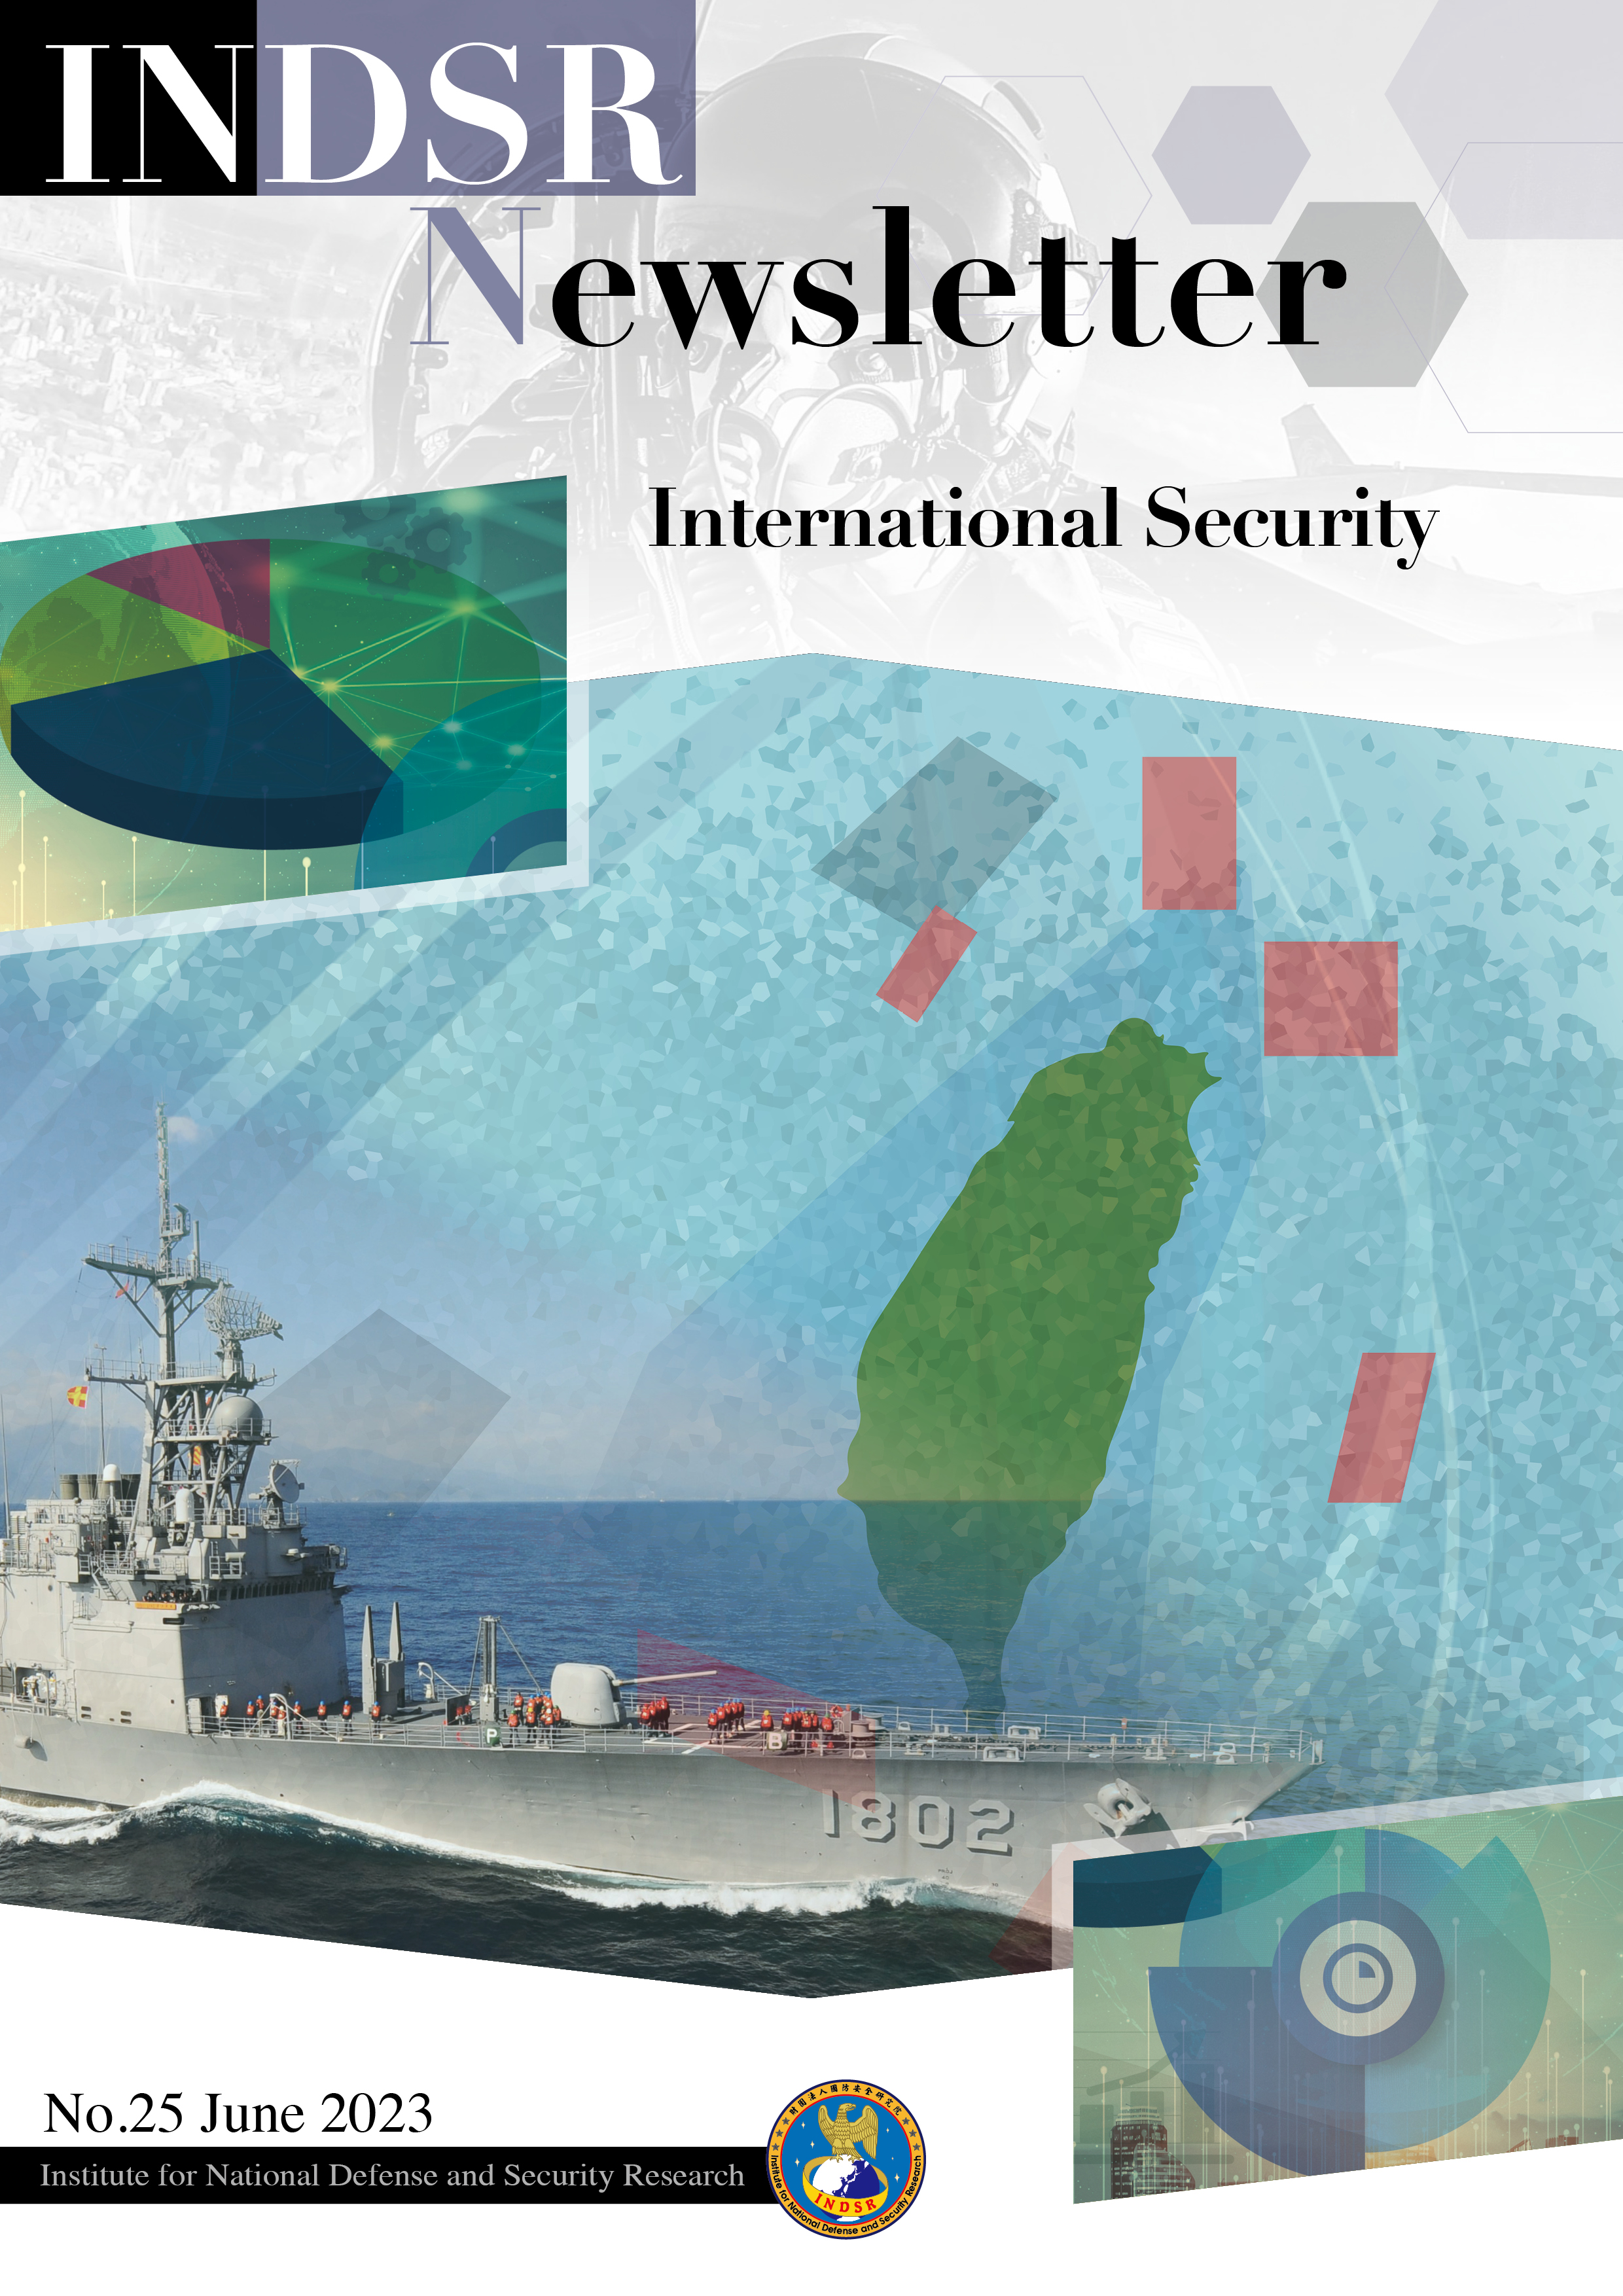 INDSR newsletter vol.25_International Security_Cover